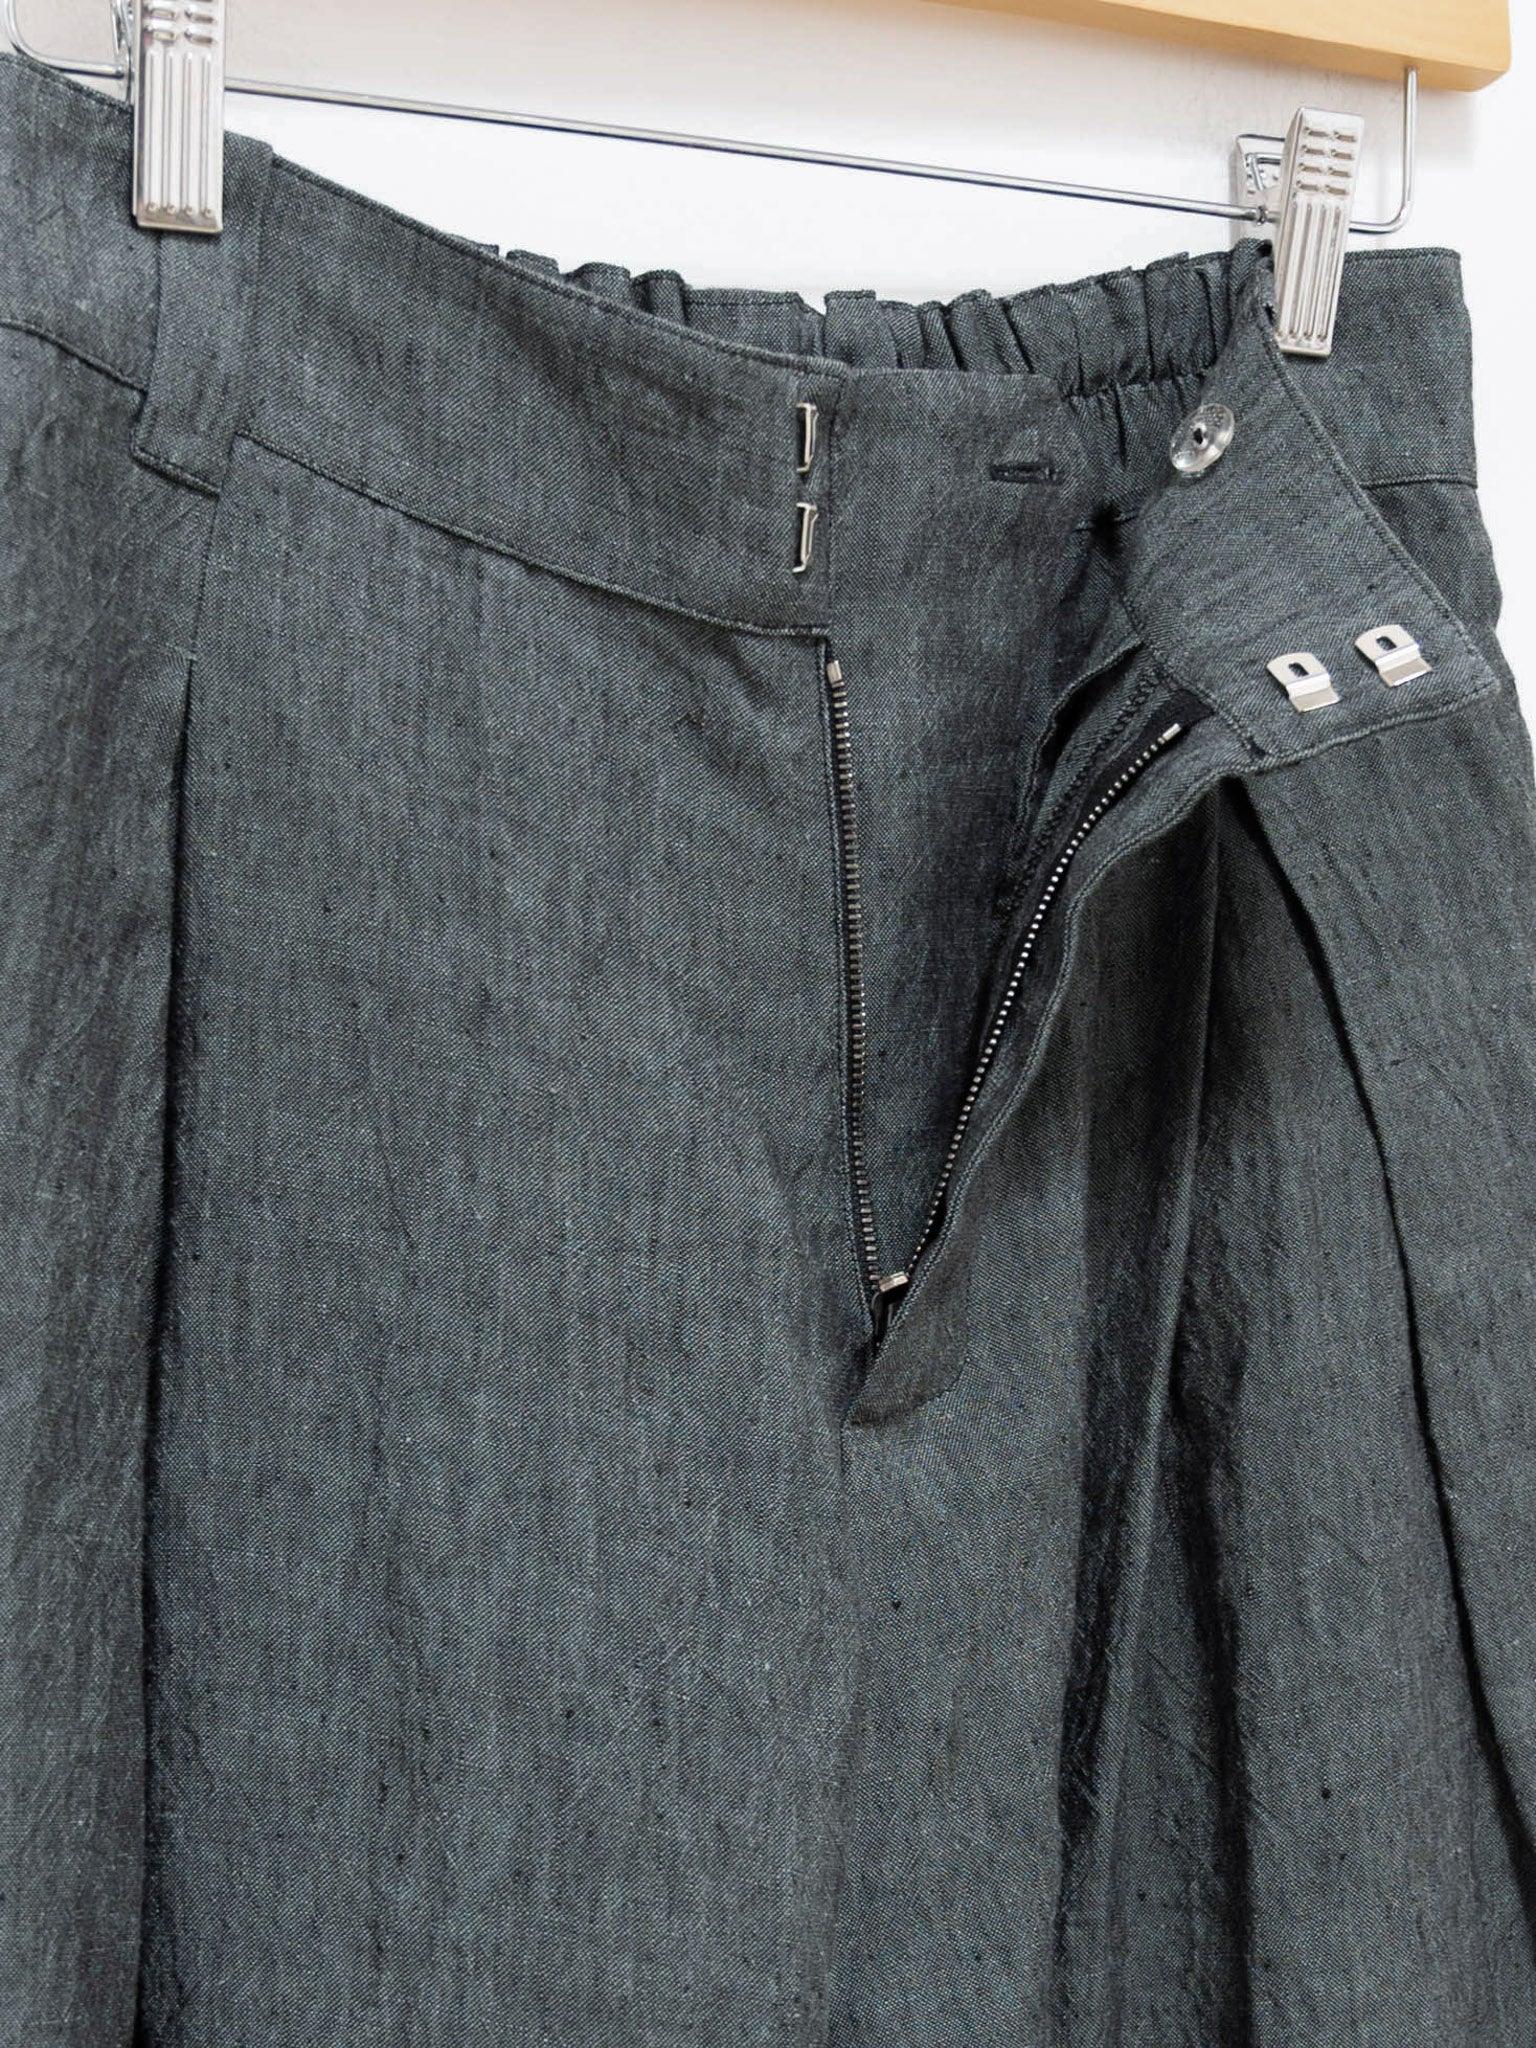 Namu Shop - Toogood The Landscaper Shorts - Blue Slate Laundered Linen